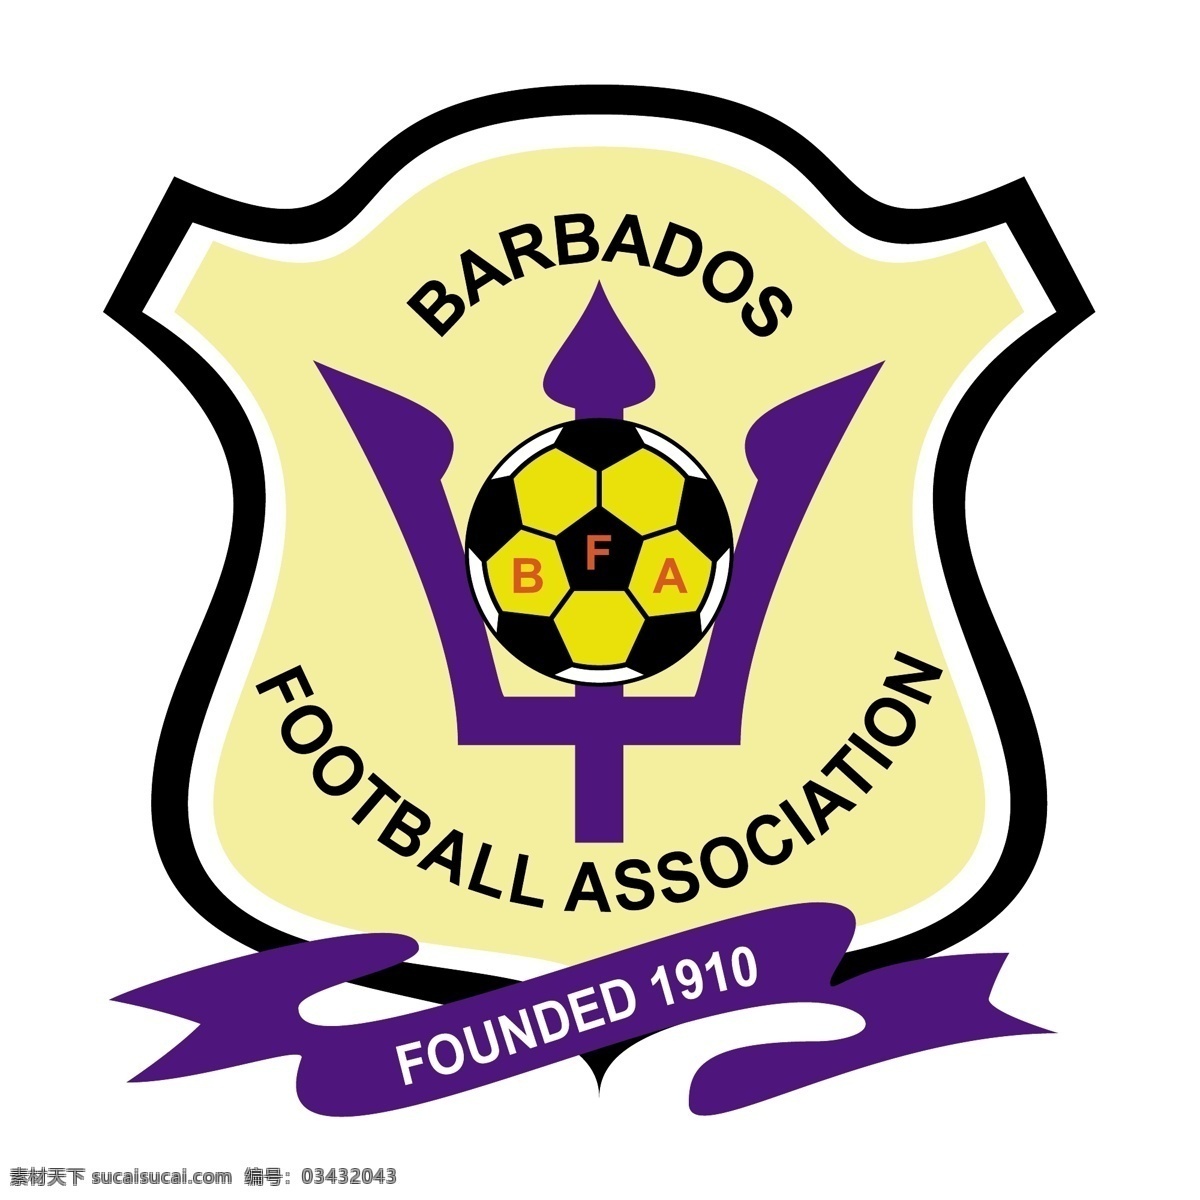 巴巴多斯 足球 协会 免费 标志 标识 psd源文件 logo设计